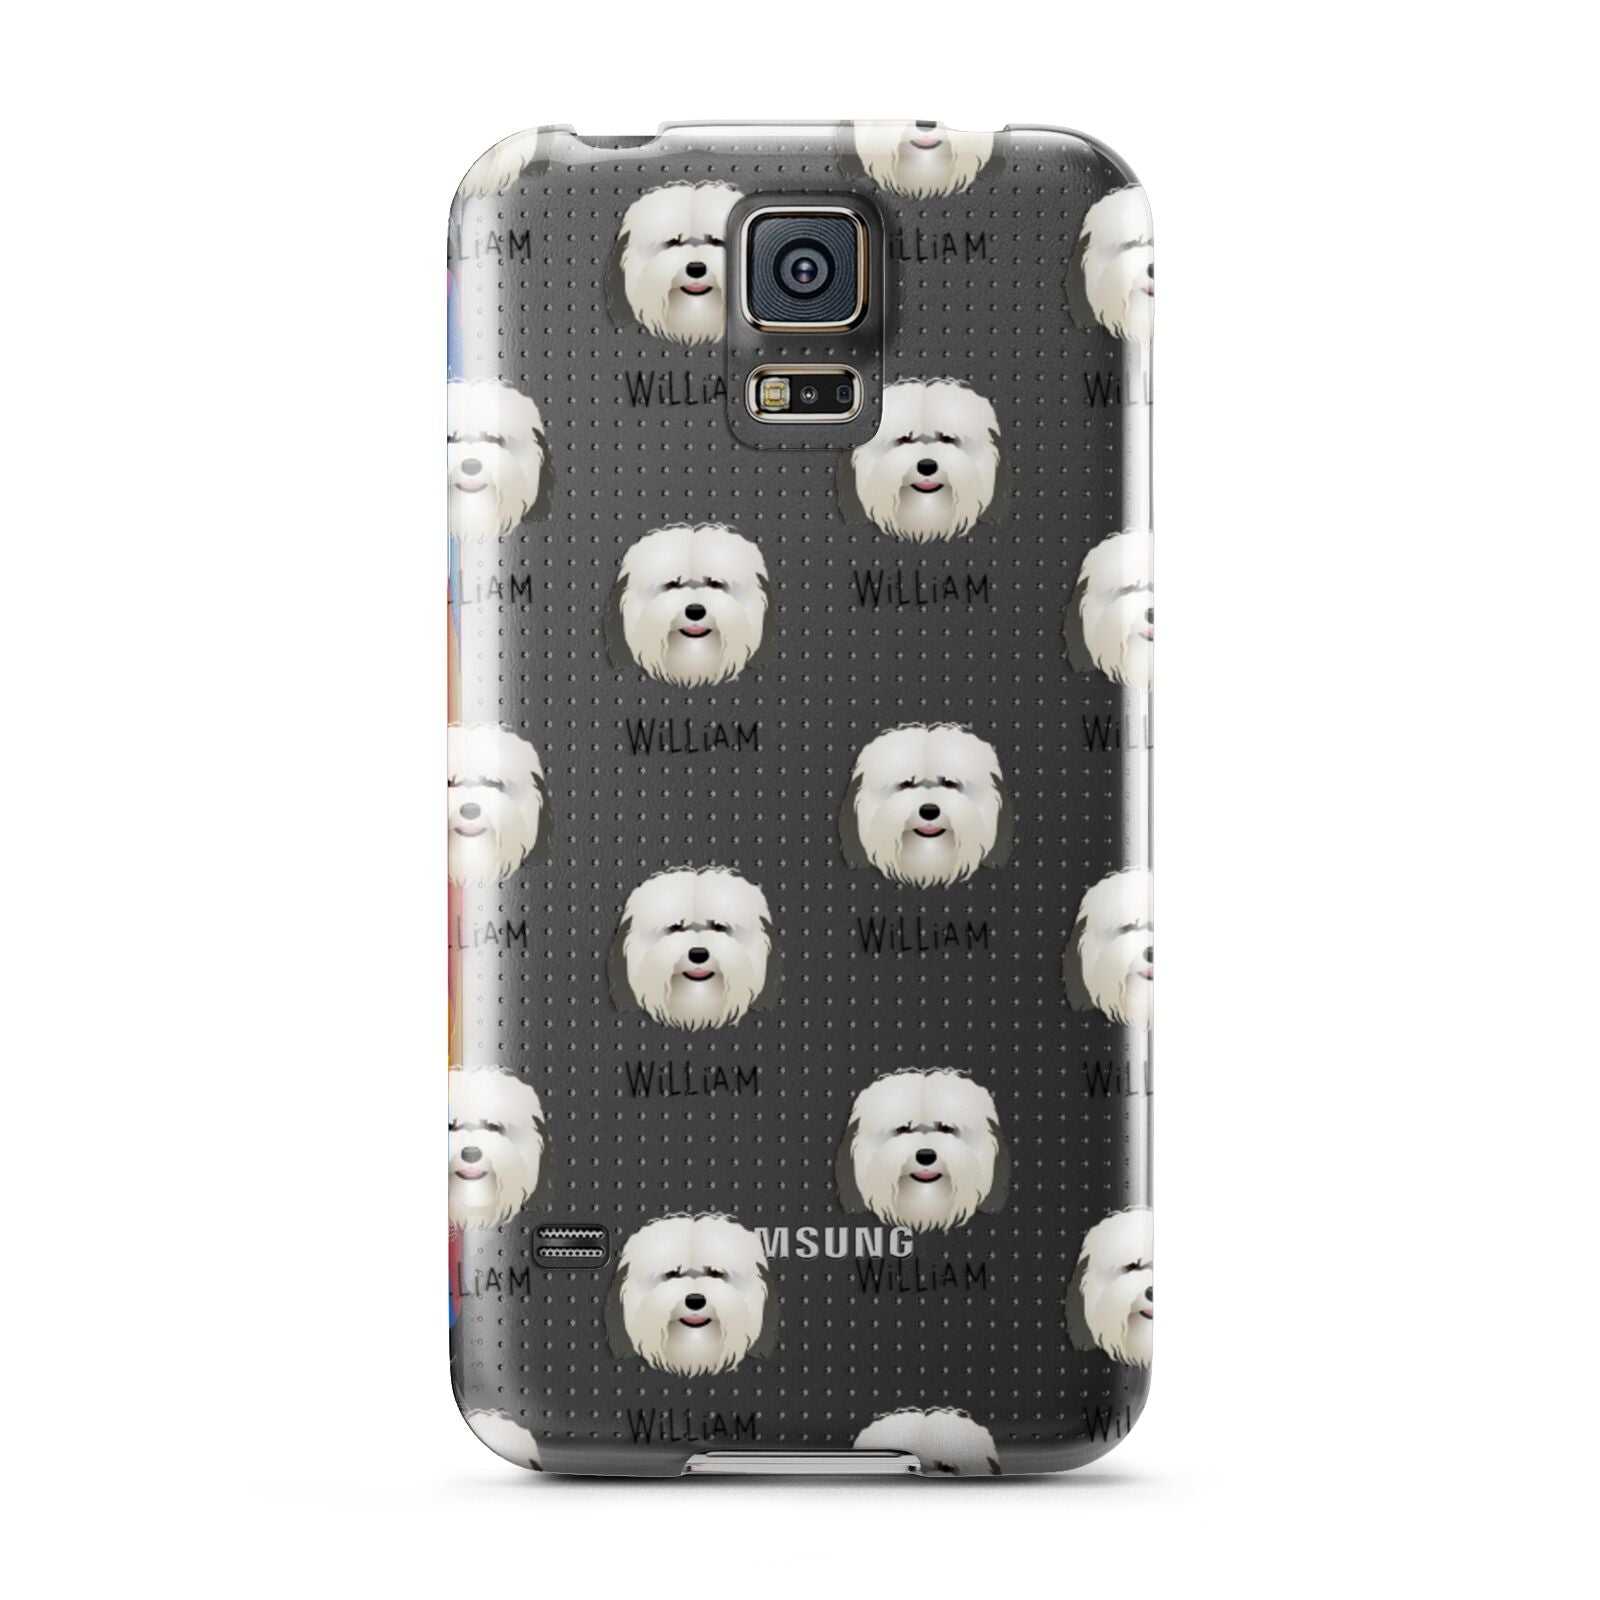 Coton De Tulear Icon with Name Samsung Galaxy S5 Case